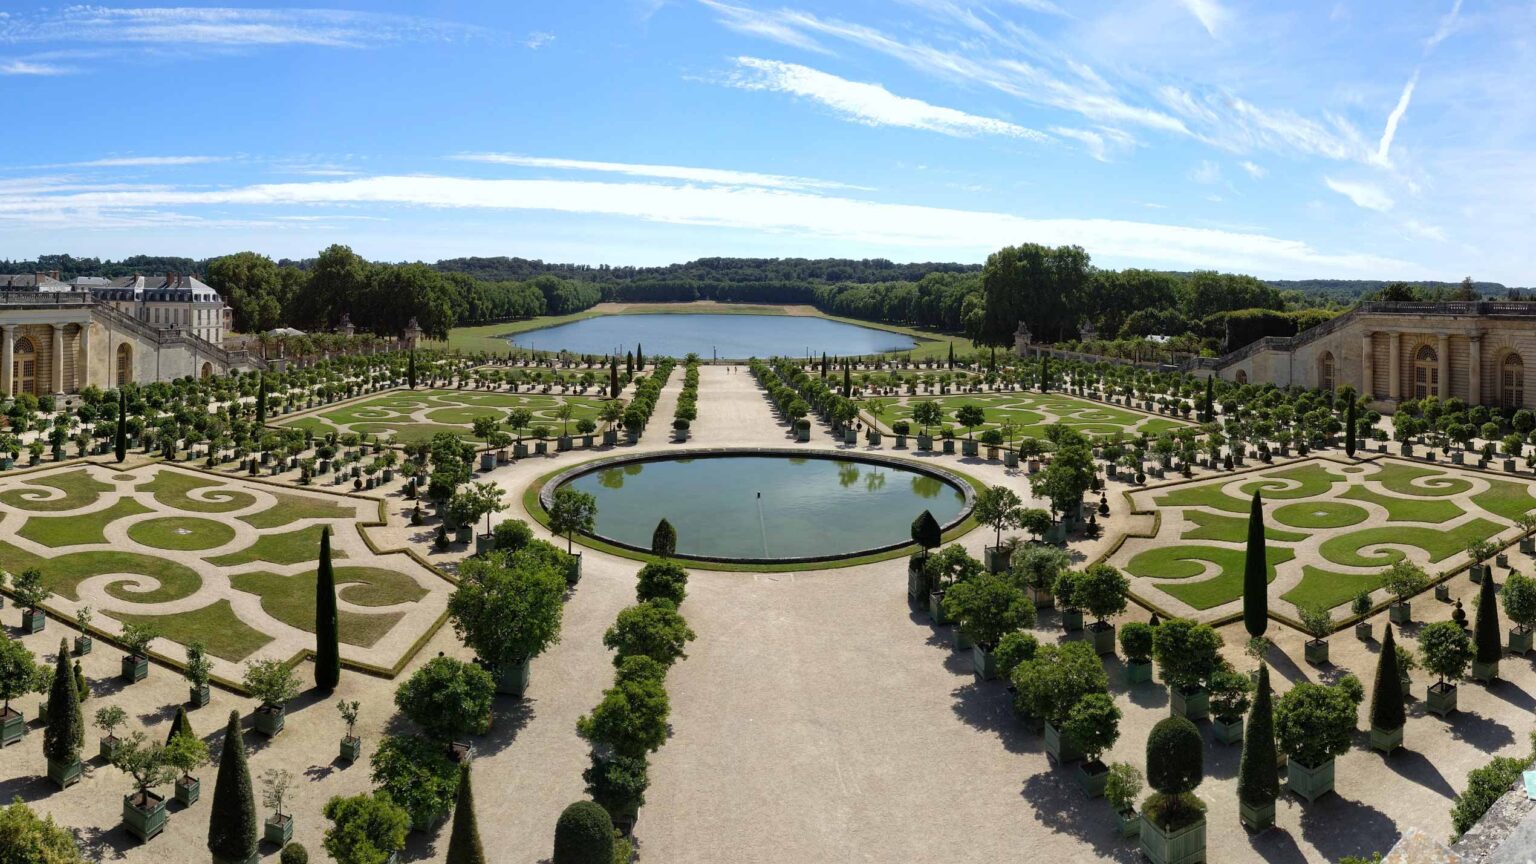 Versailles Palace Gardens